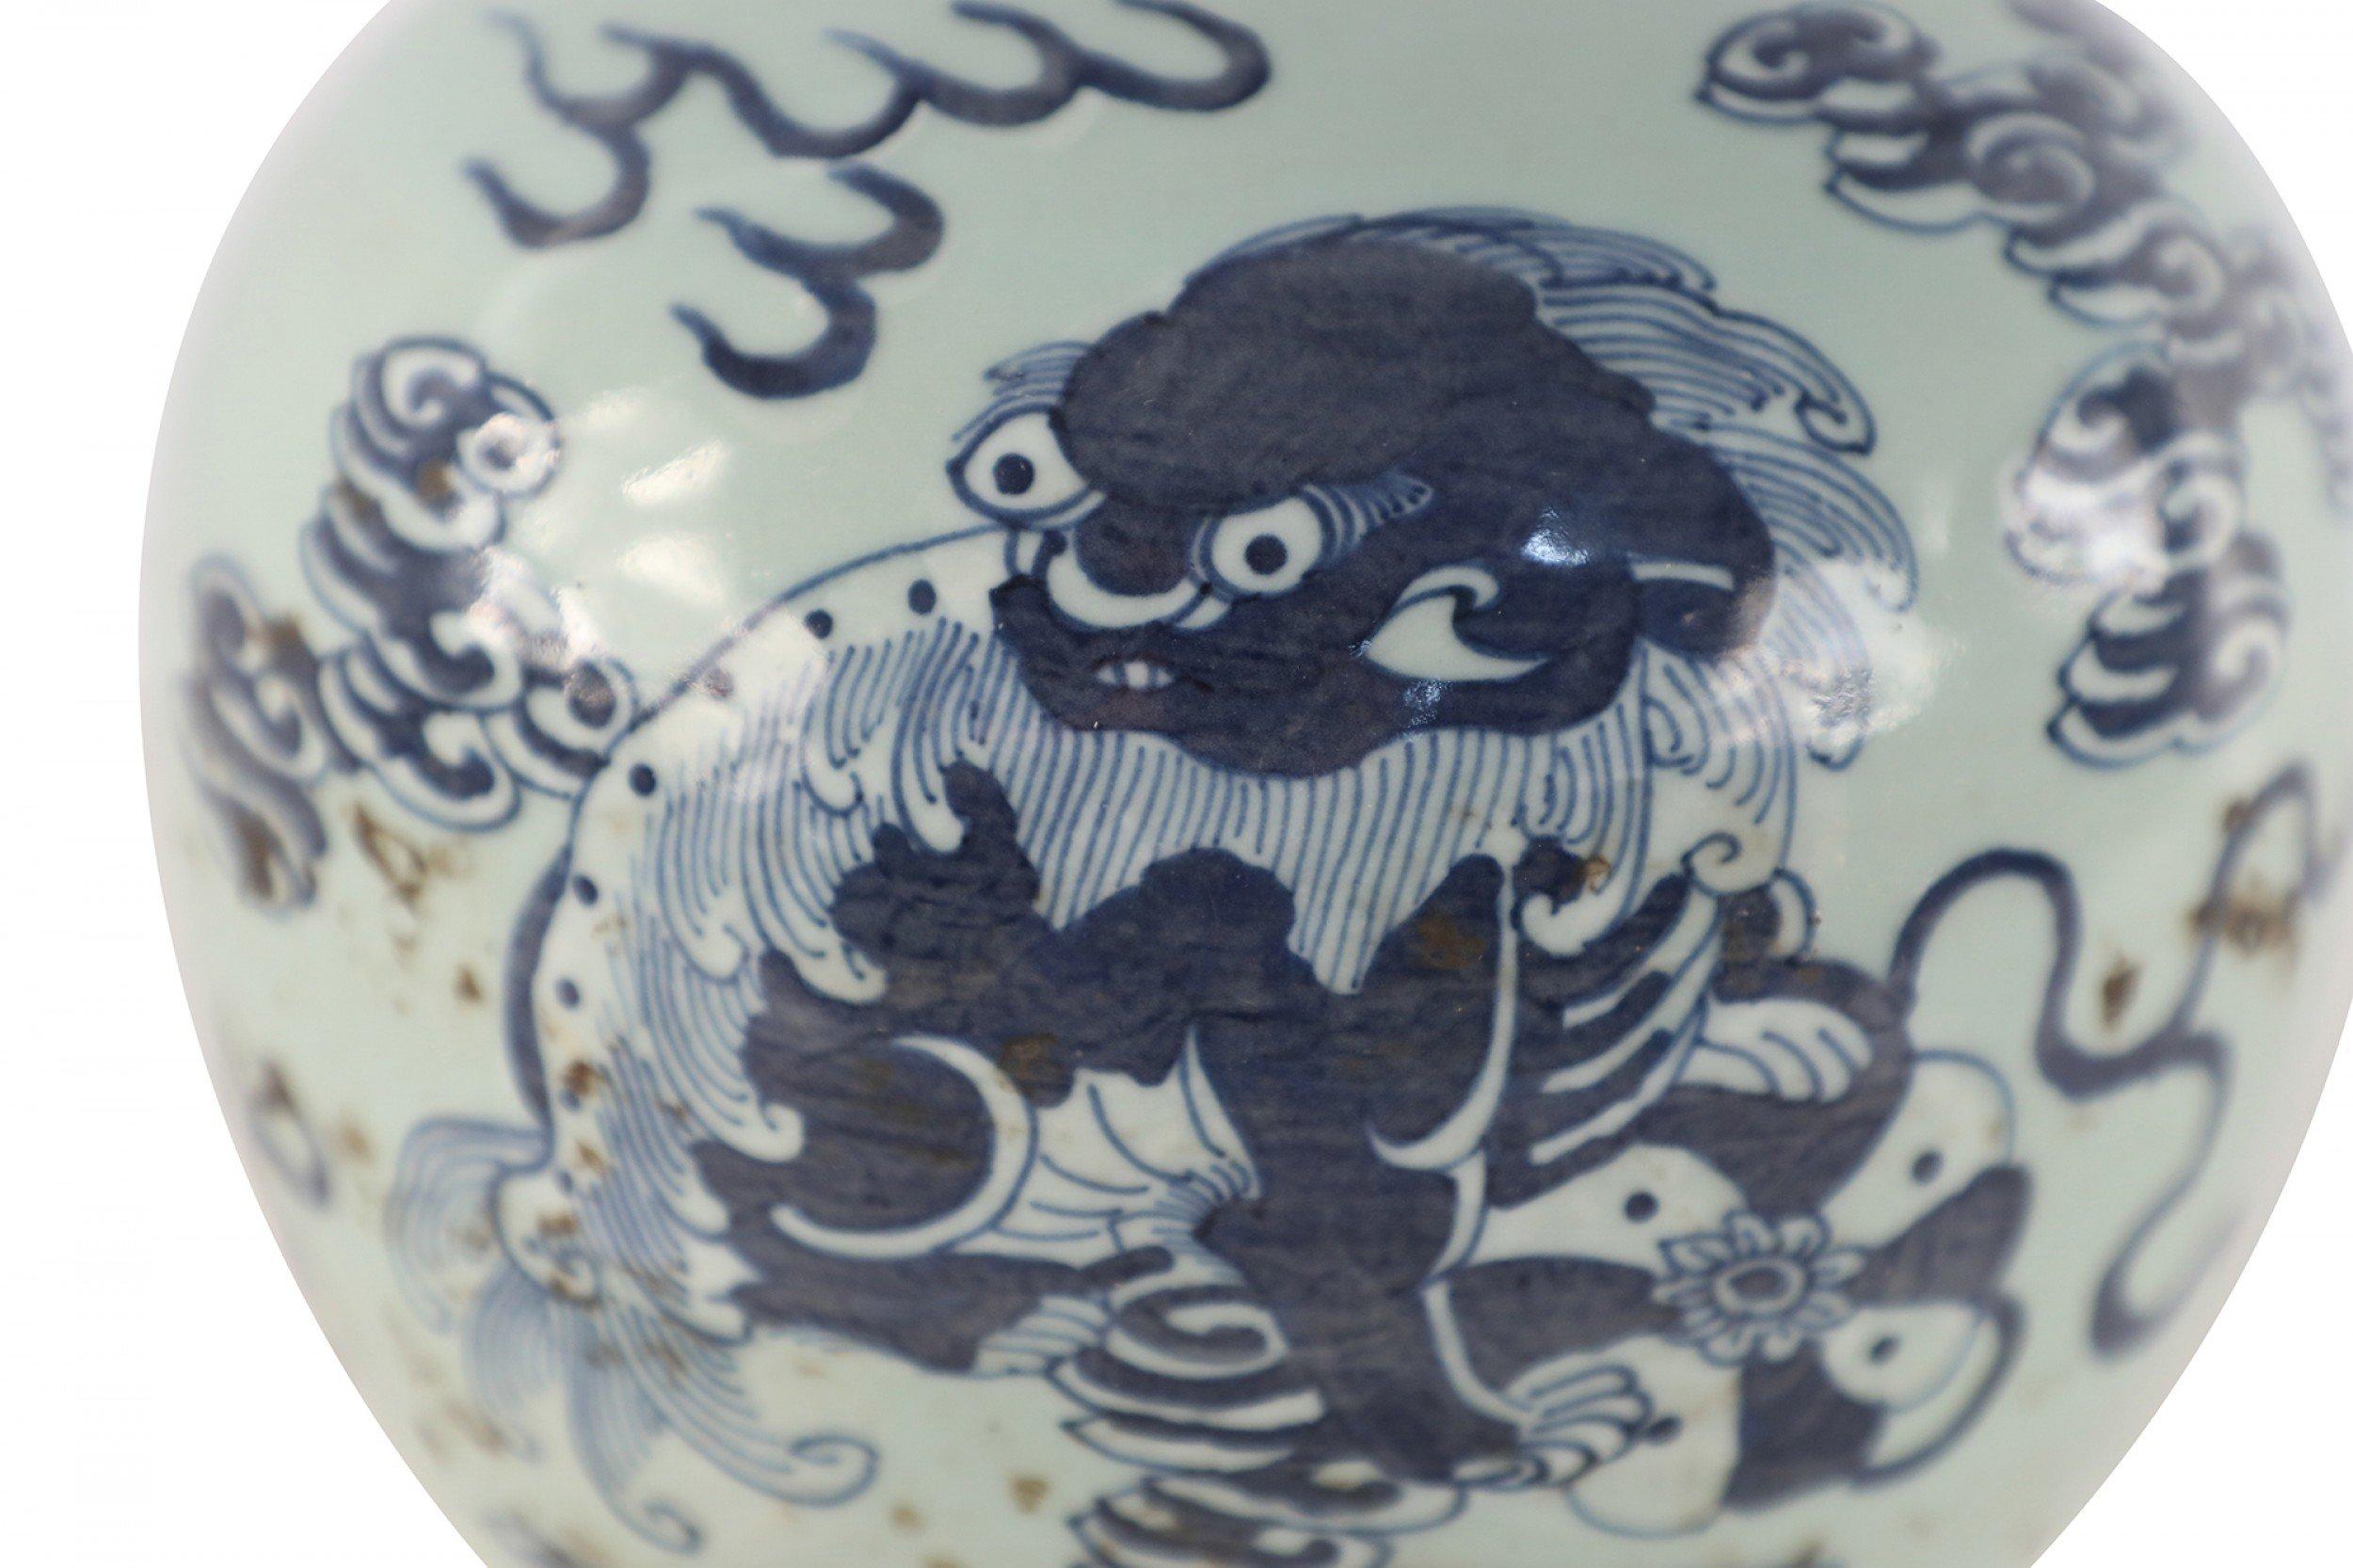 Chinesische Seladon-Porzellanvase, bemalt mit einem blauen Drachen inmitten von Wolken und mit einer kleinen Mundöffnung versehen.
 